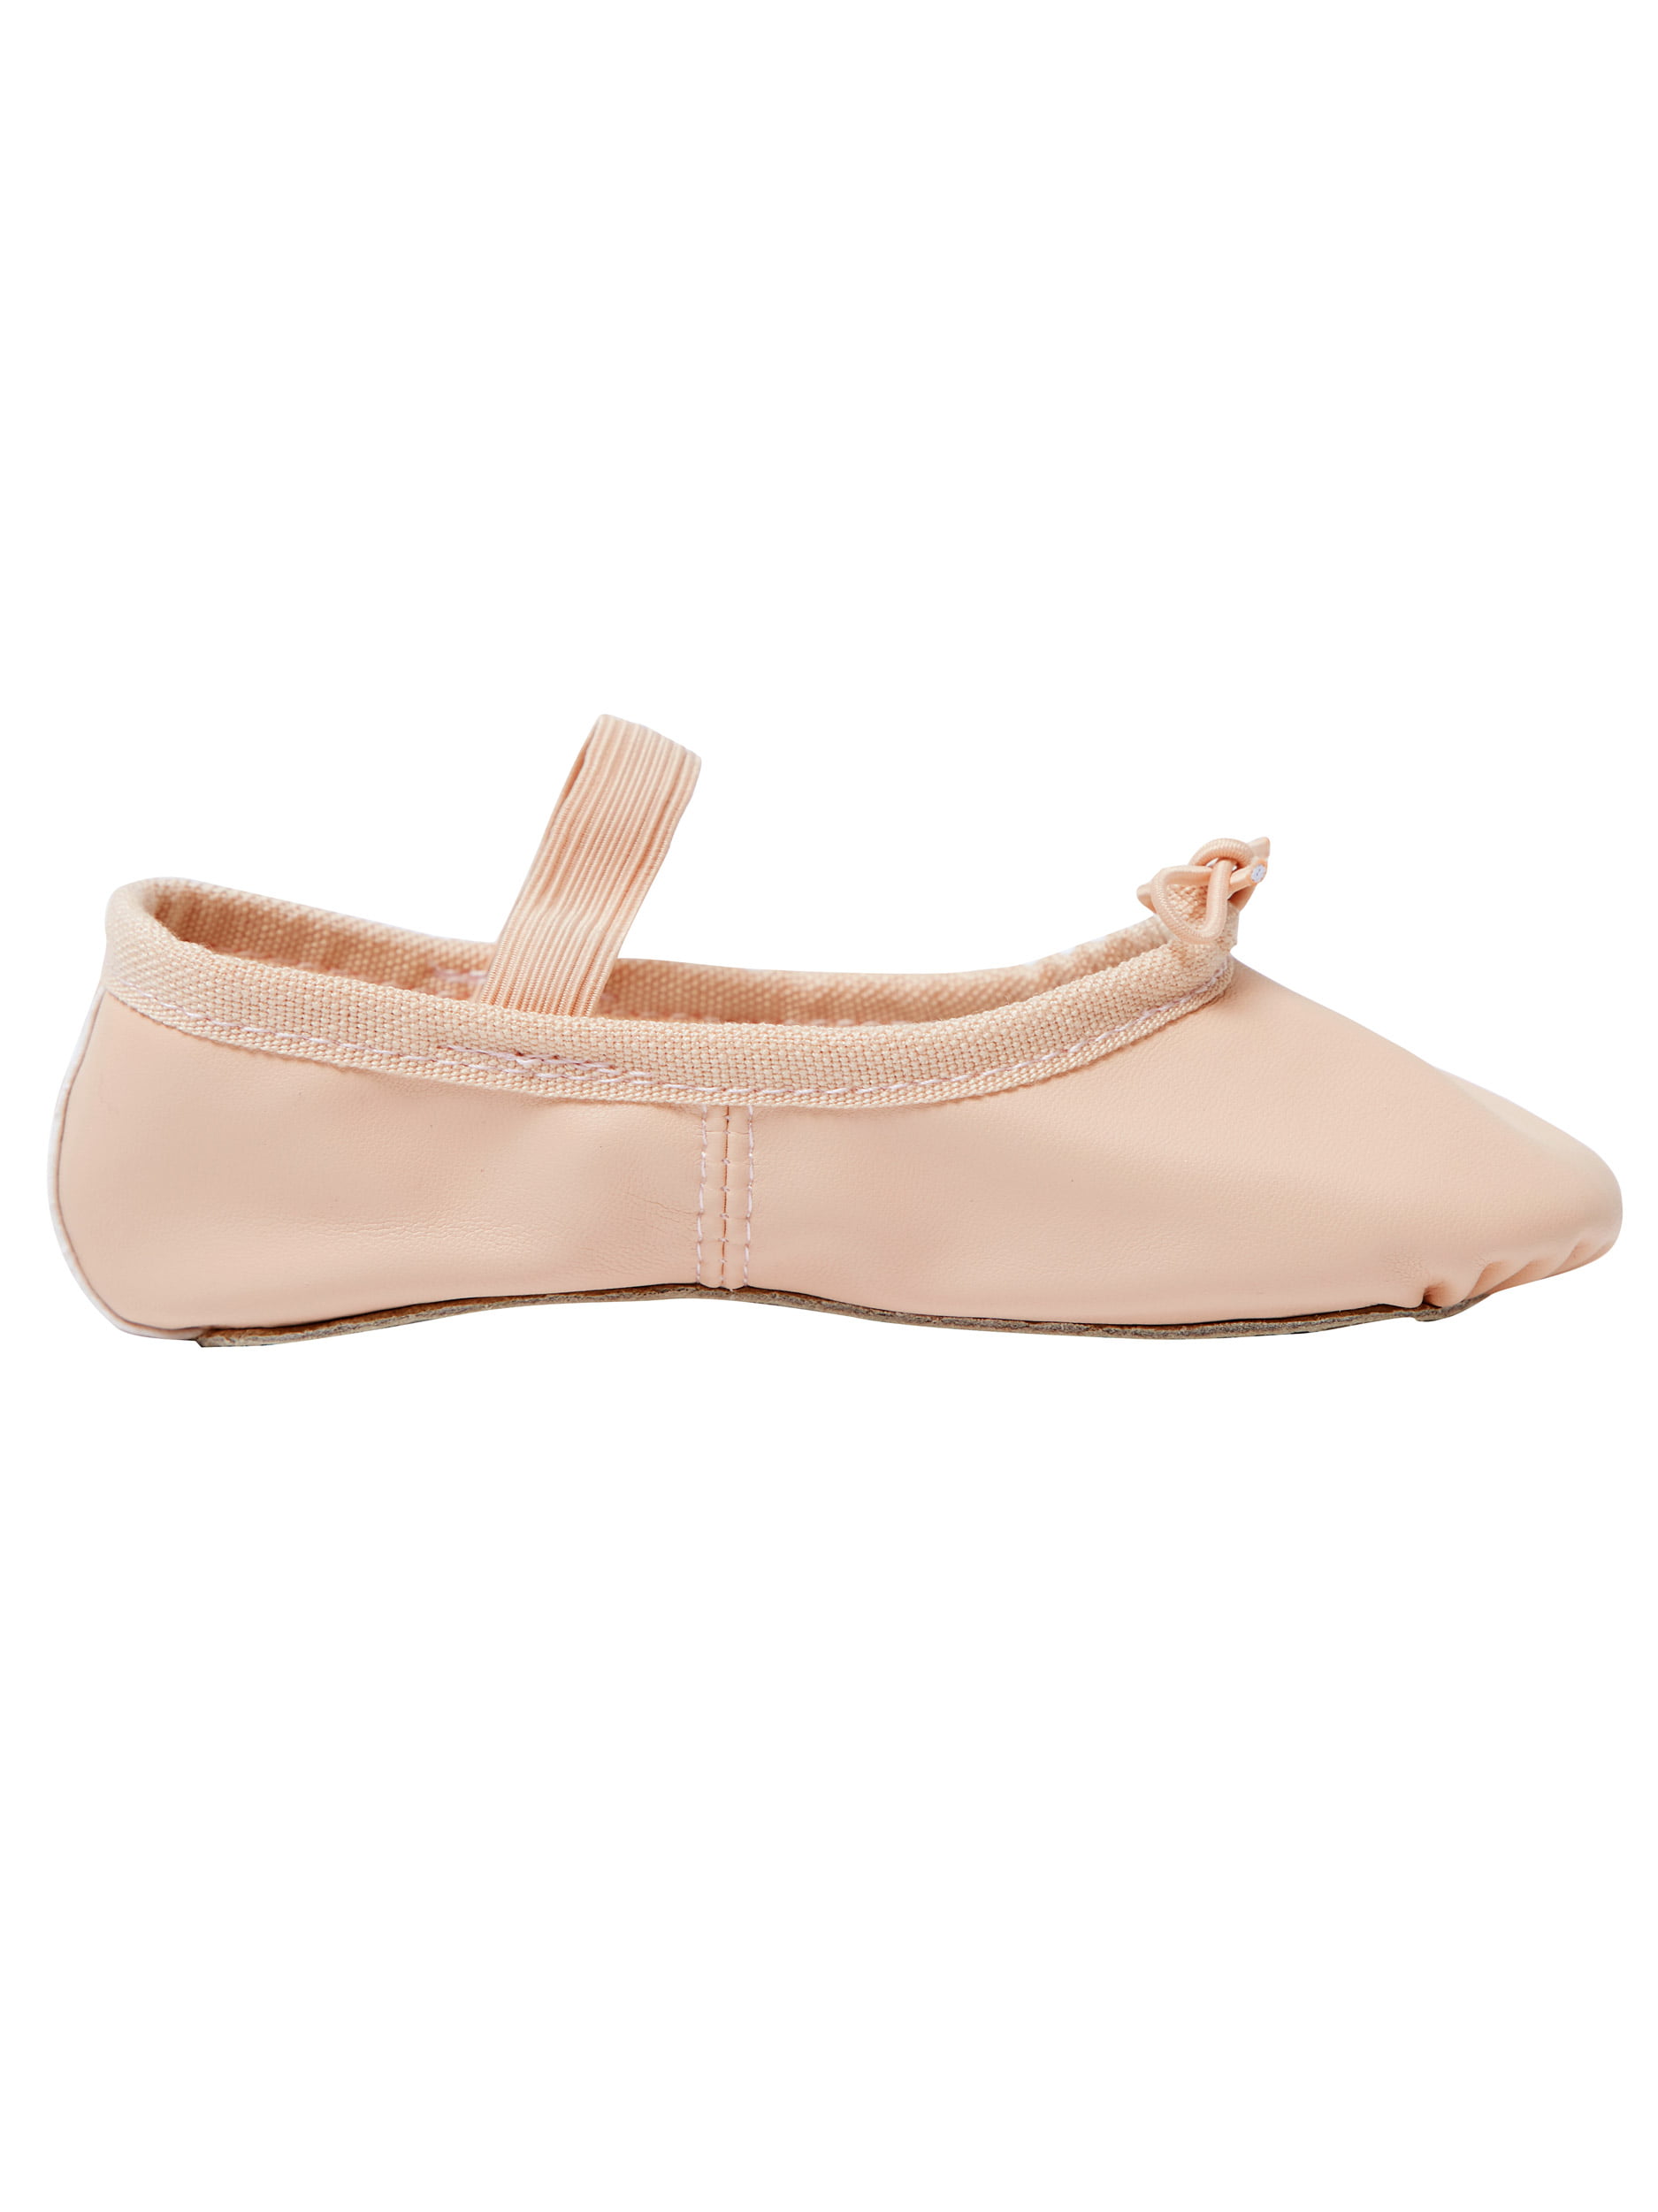 Chaussures de ballet pour enfants en cuir souple - Star 14L / Tutu 4L -  Opéra